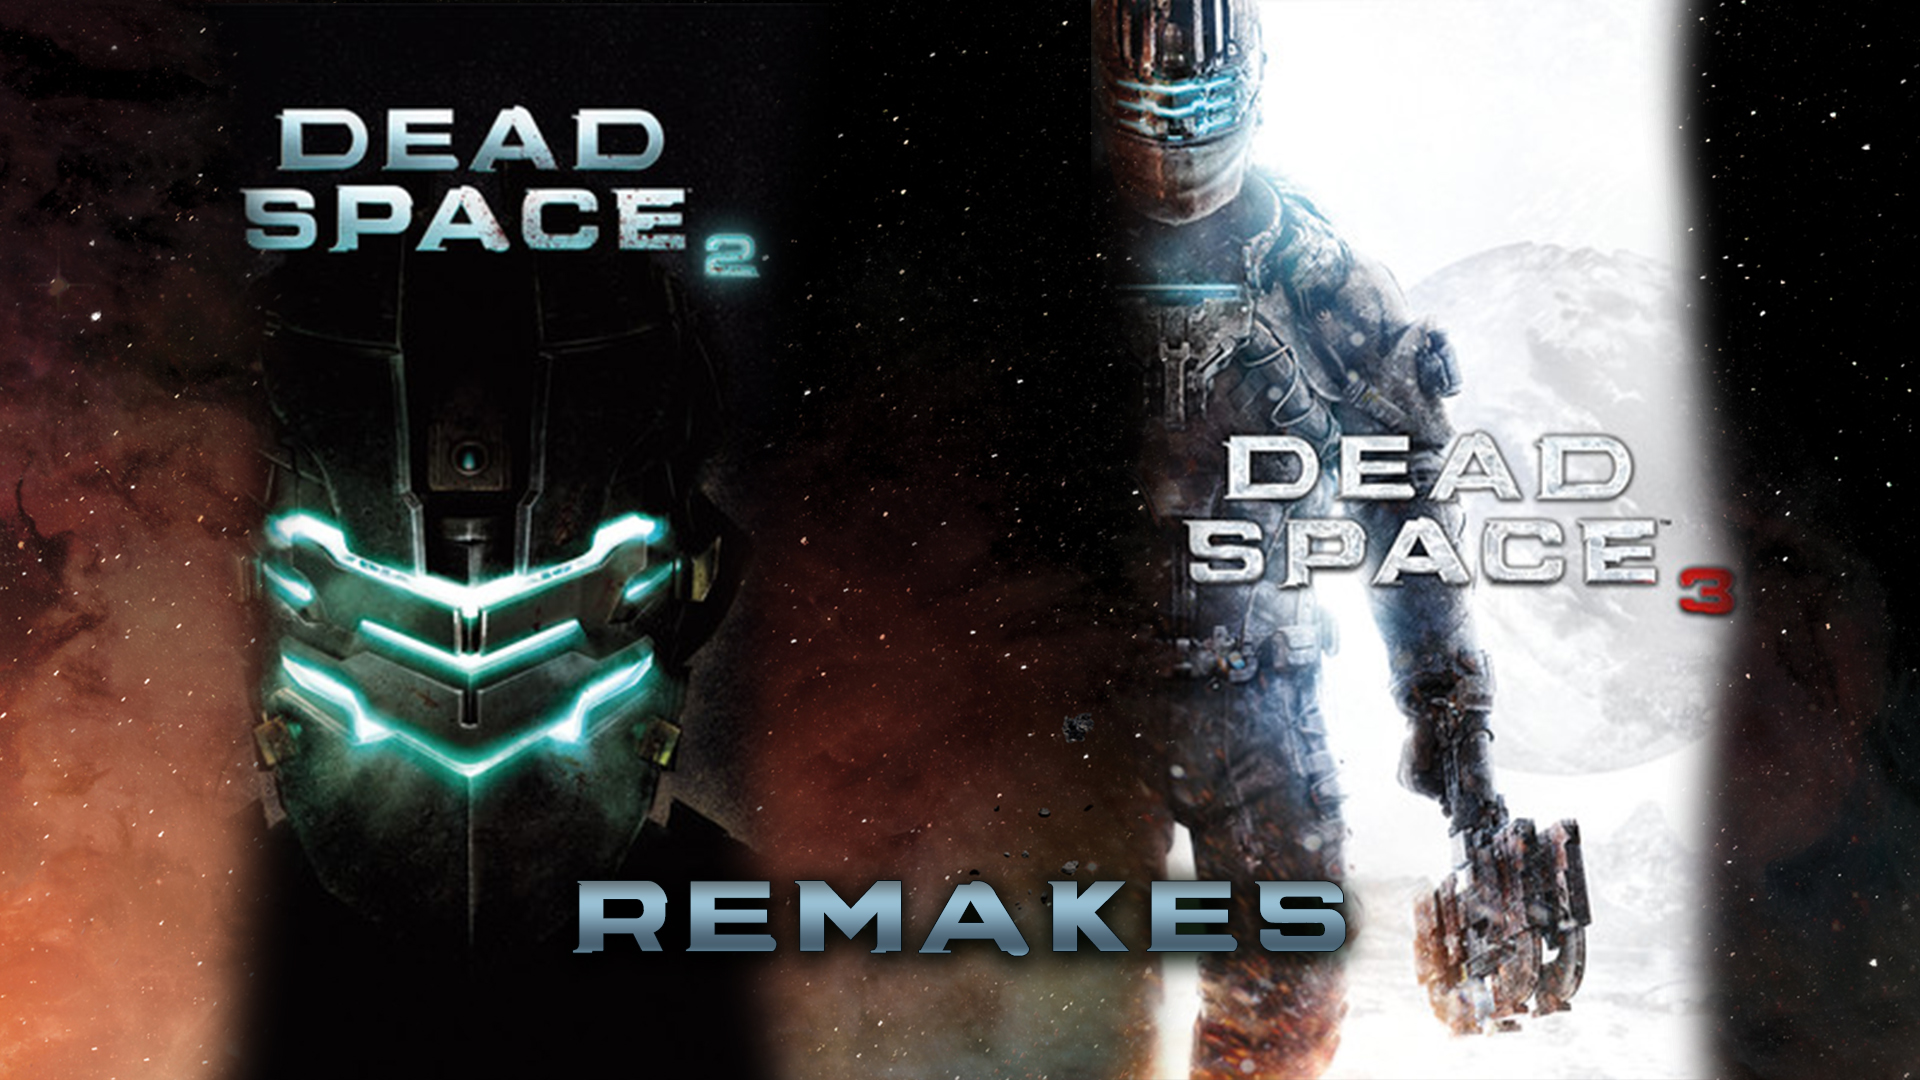 Encuestan a fans sobre dead space 2 y 3 remake